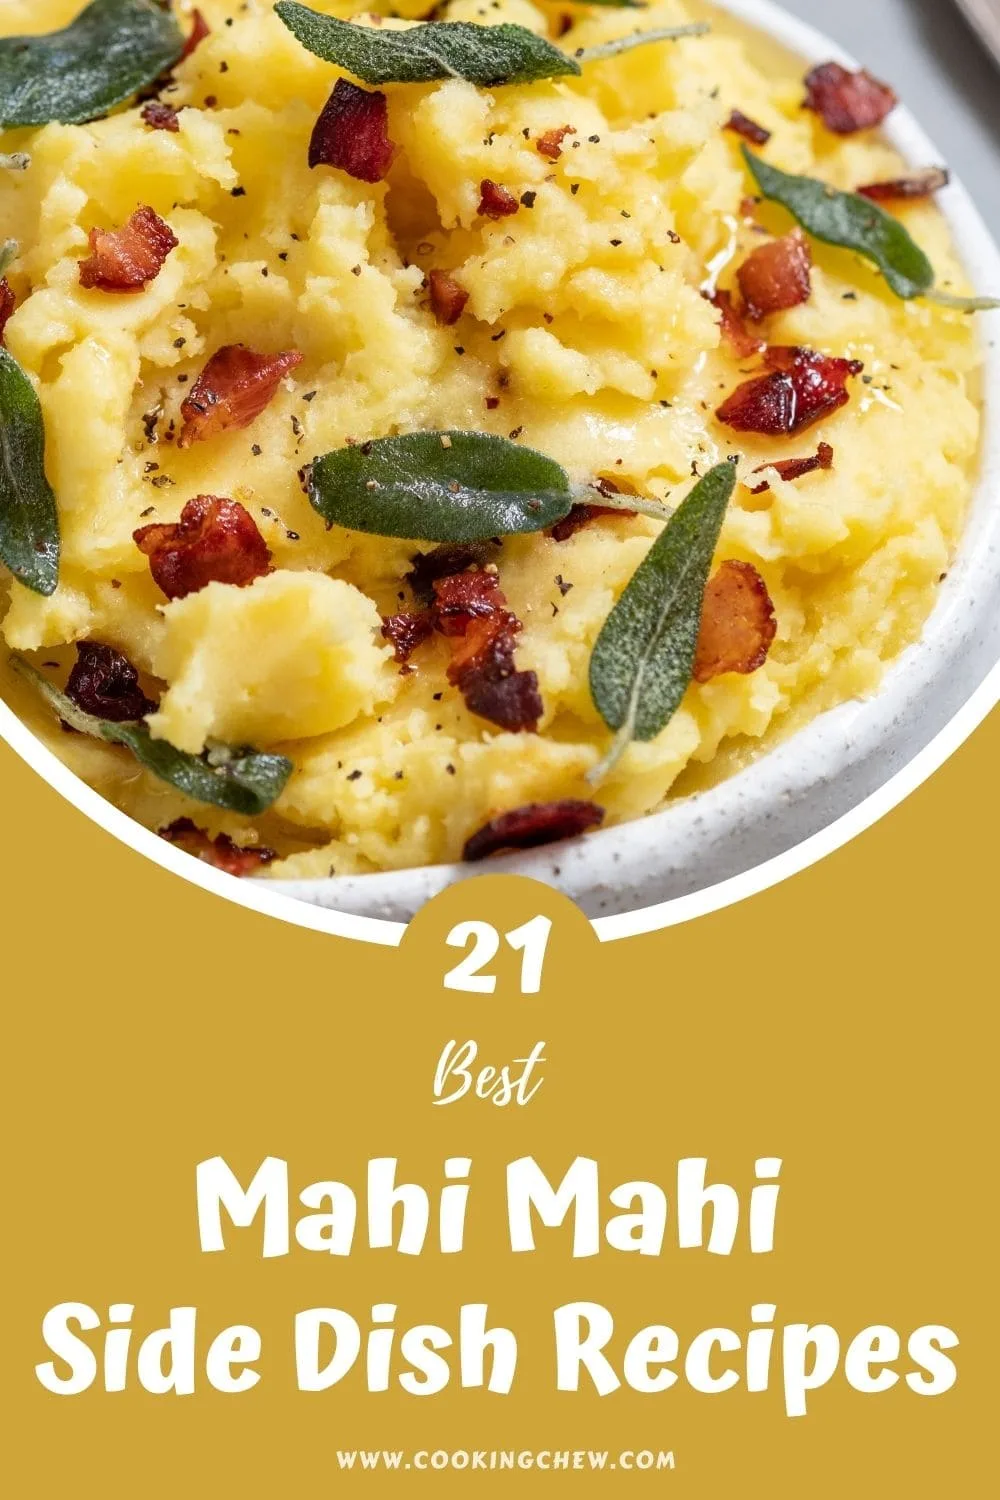 What To Serve With Mahi Mahi